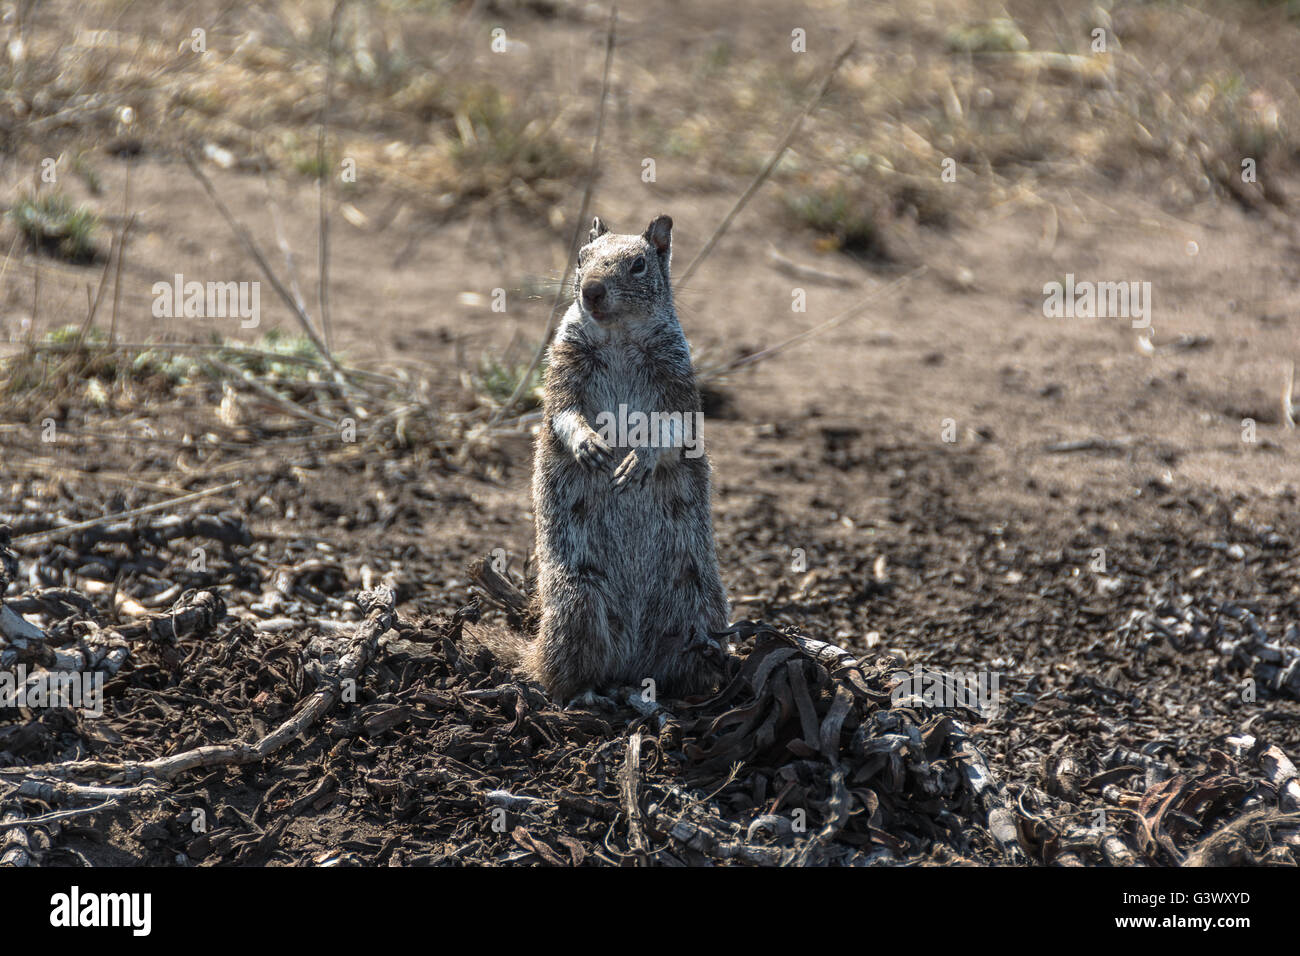 La ardilla en el suelo, Fort Bragg, Californiawild Foto de stock